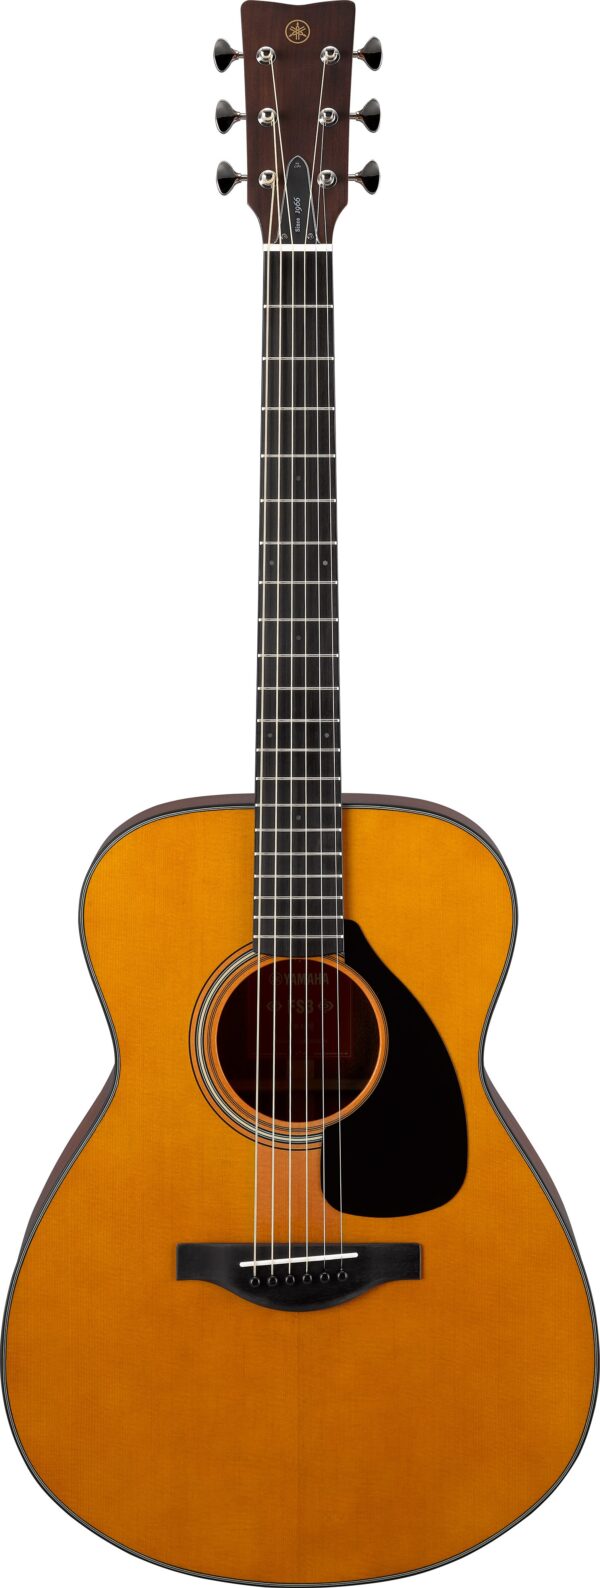 FS3 acoustic guitar